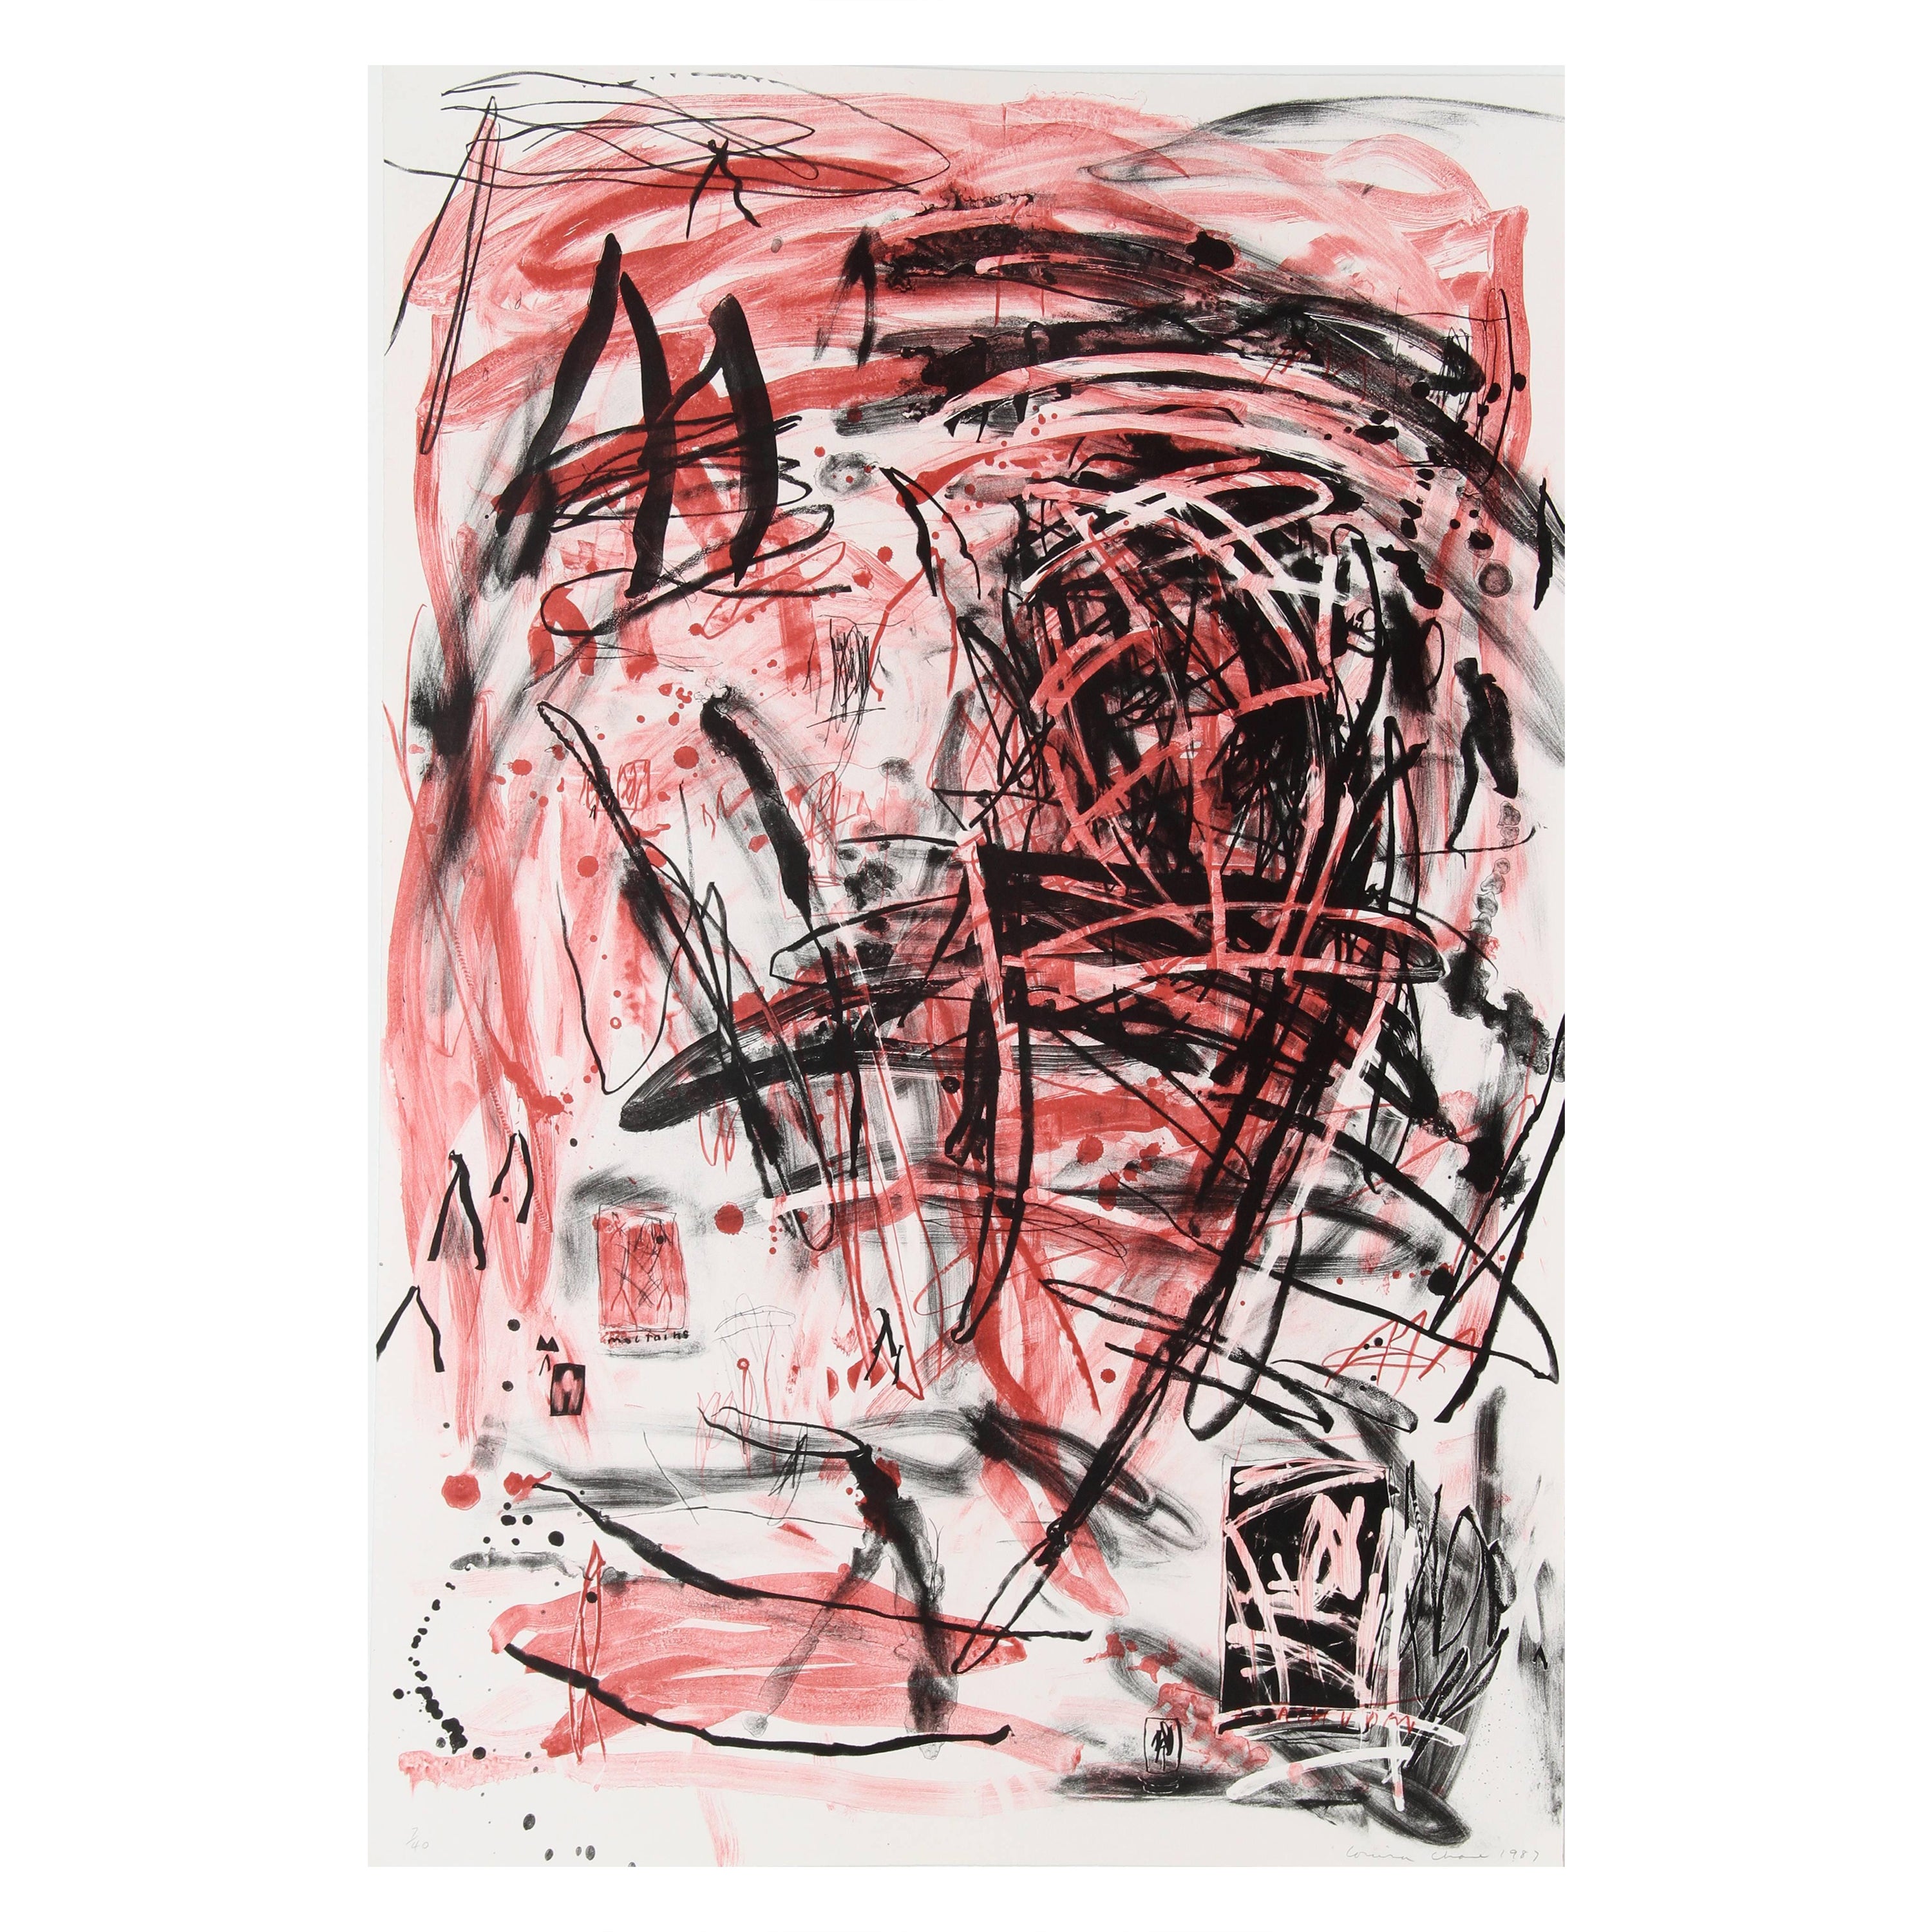 Artistics : Louisa Chase
Titre : Sans titre (Montagne)
Année : 1987
Support : Lithographie, signée et numérotée au crayon
Edition : 30
Format du papier : 44,5 x 30 pouces (111,76 x 76,2 cm)